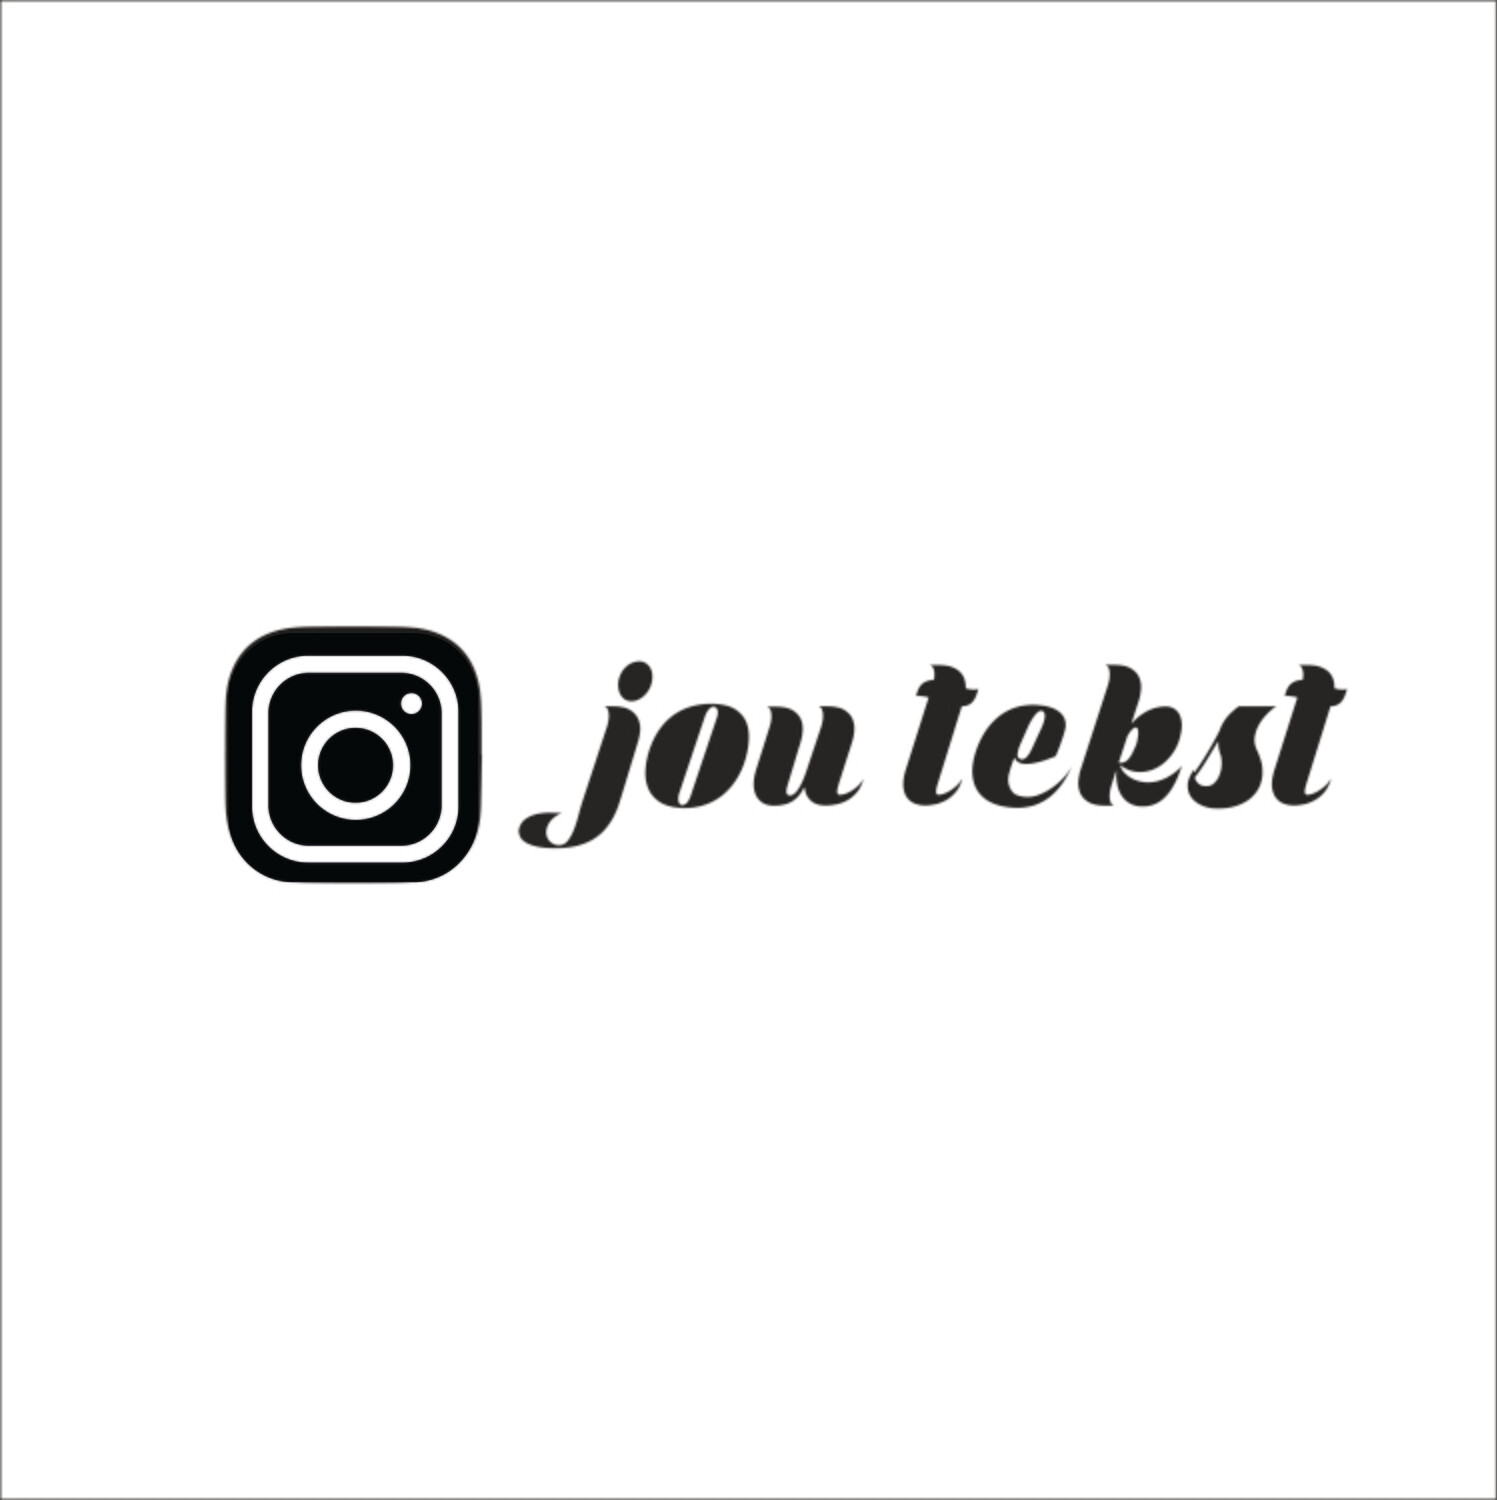 Instagram-logo + jouw tekst/naam